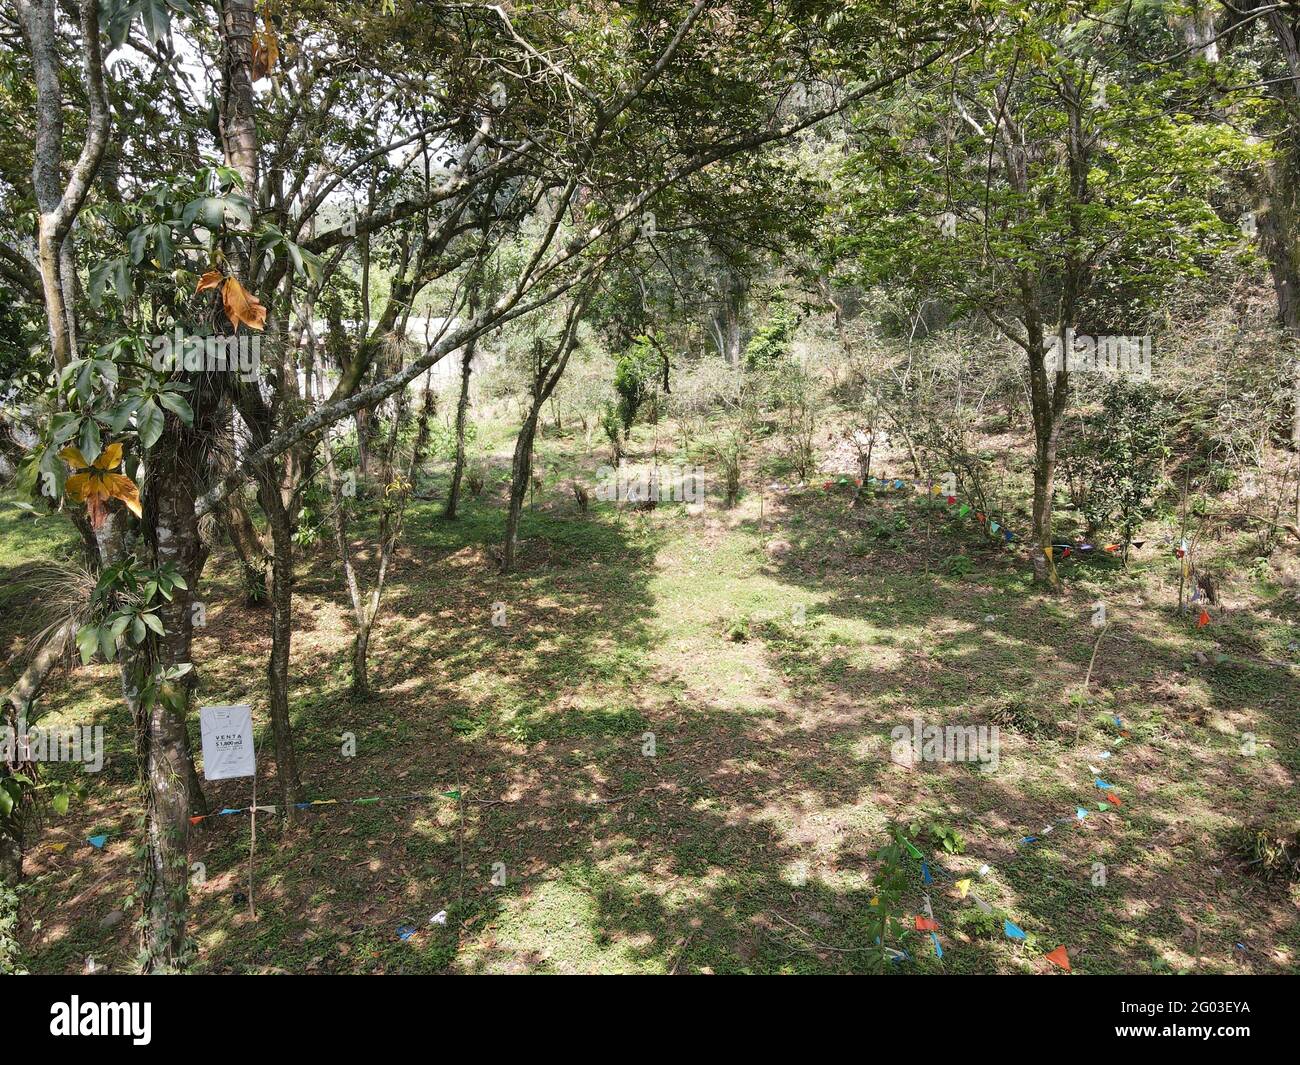 XALAPA, MESSICO - 29 maggio 2021: Volare con il drone e scattare fotografie della zona Coatepec Veracruz Briones, nonché le sue aree verdi, un ar Foto Stock